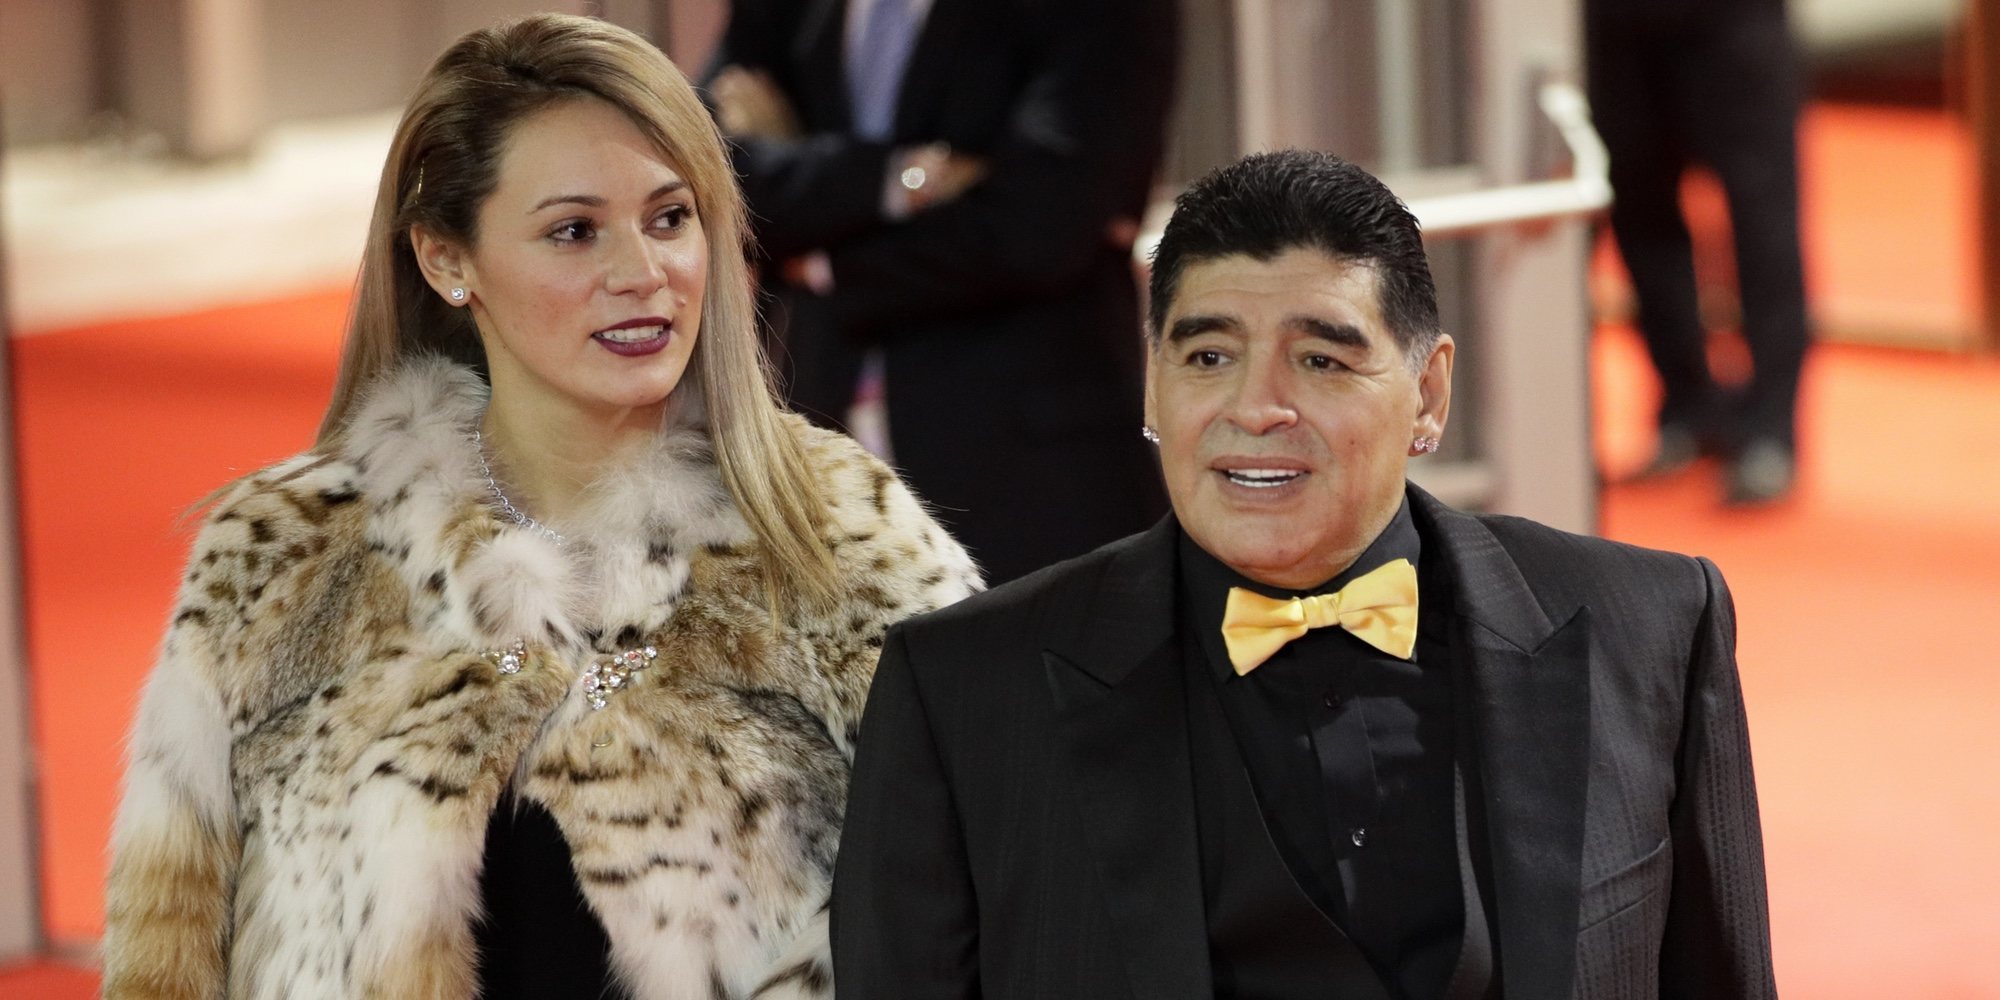 Maradona le pide matrimonio a su novia Rocío Oliva en su 28 cumpleaños